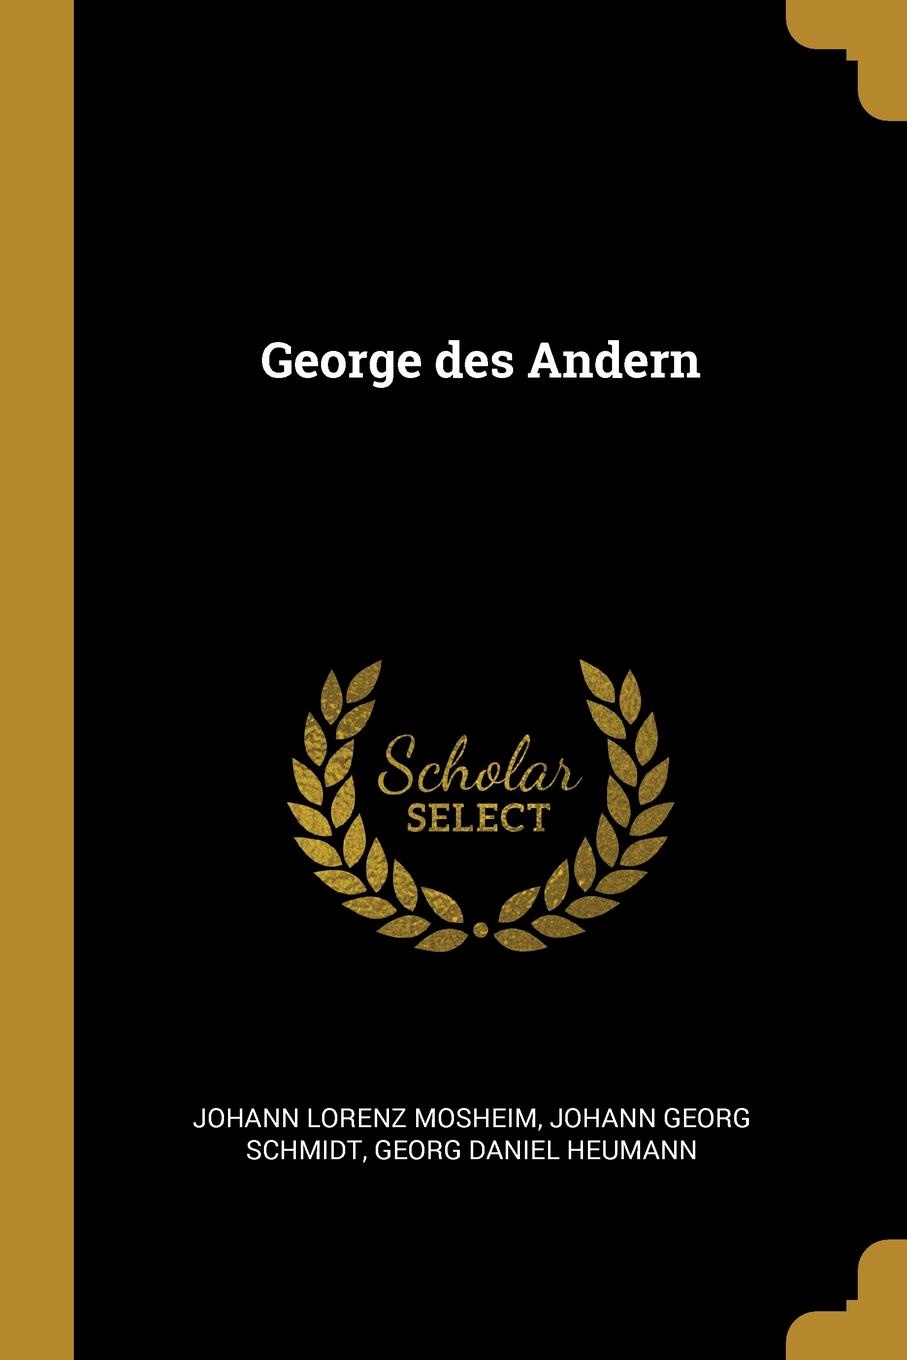 George des Andern